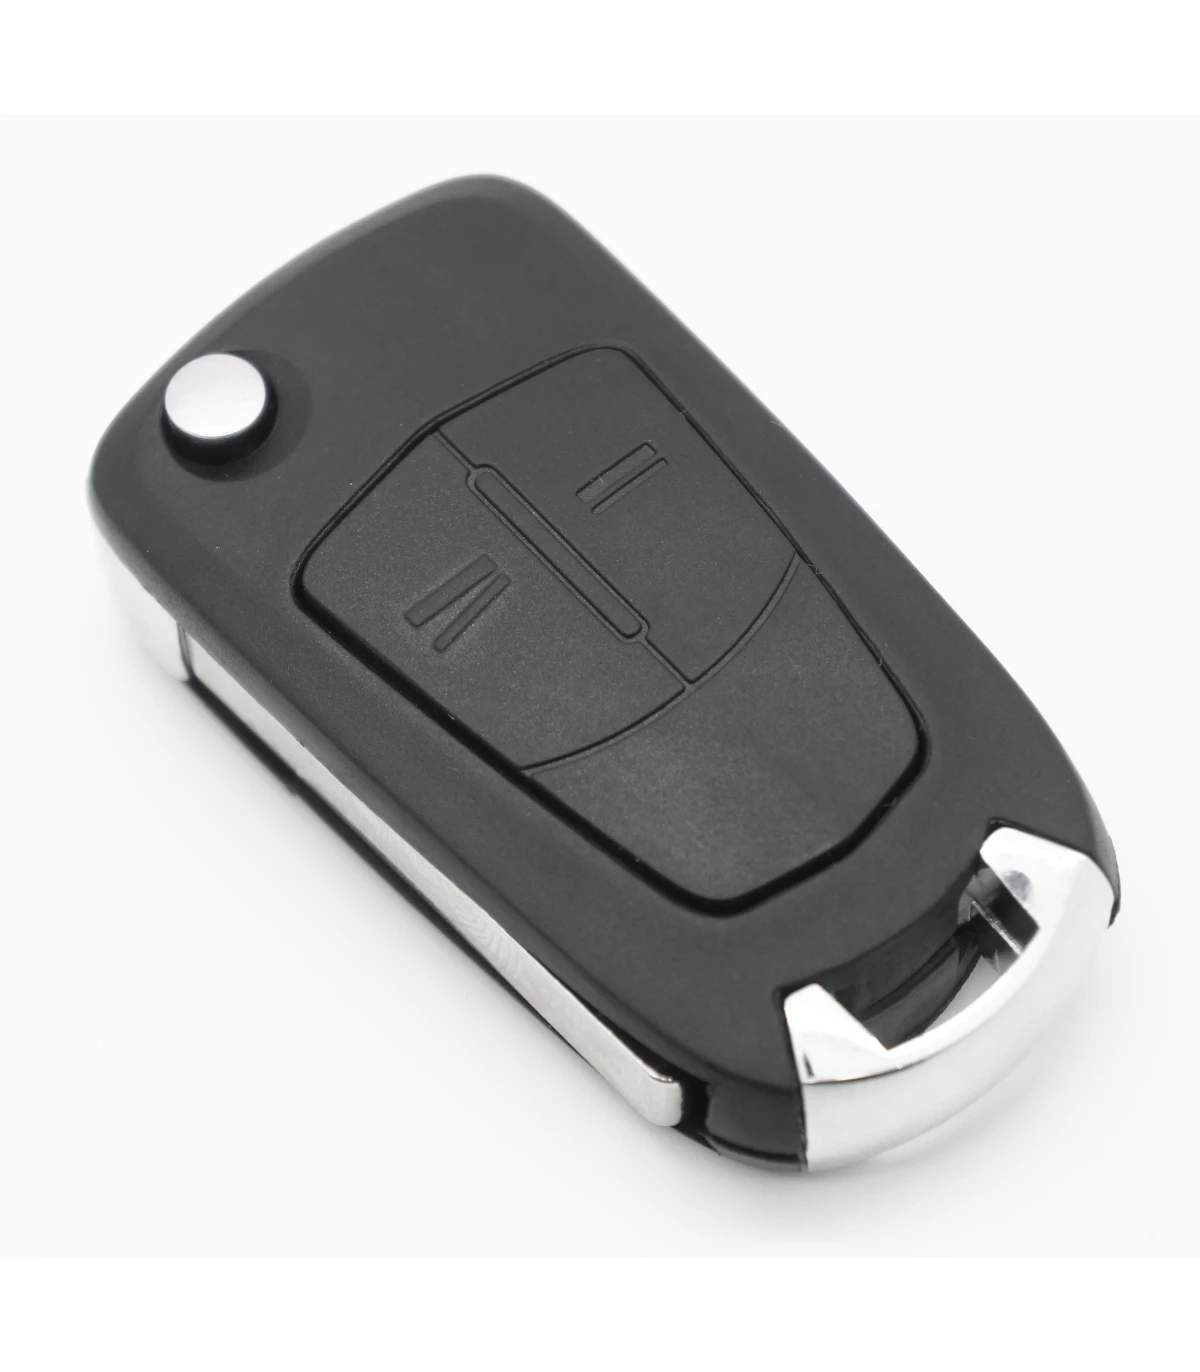 HIBEYO Coque de Protection en Silicone pour clé de Voiture Opel Opel Corsa  Astra Vectra Zafira Antara Tigra Porte-clés télécommande à 2 Boutons Blanc